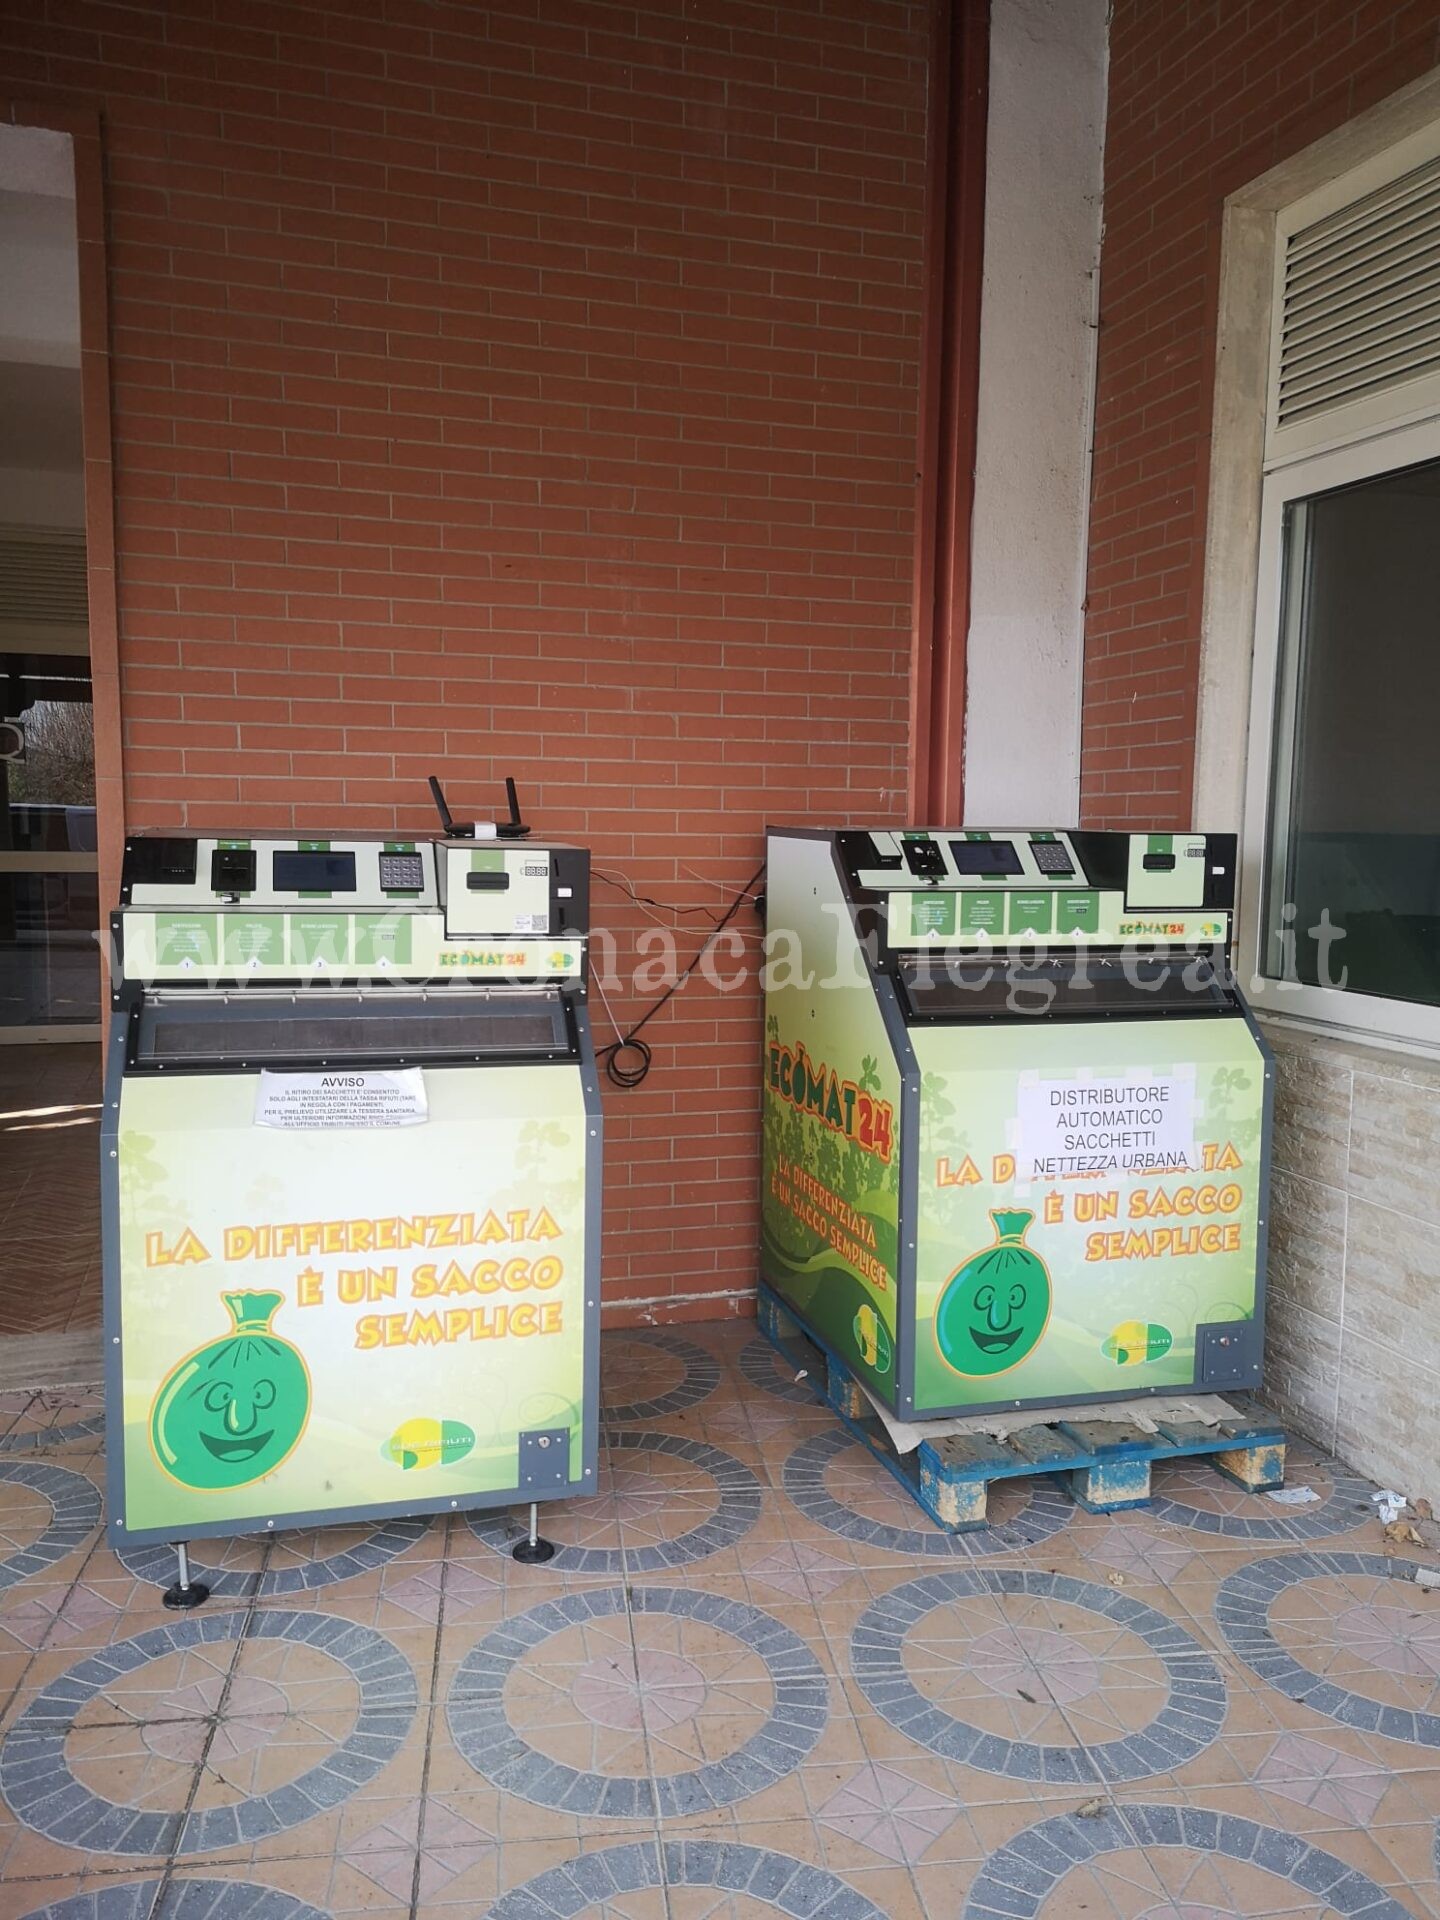 QUARTO/ Nuovo distributore automatico dei sacchetti rifiuti presso la parrocchia Gesù Divin Maestro